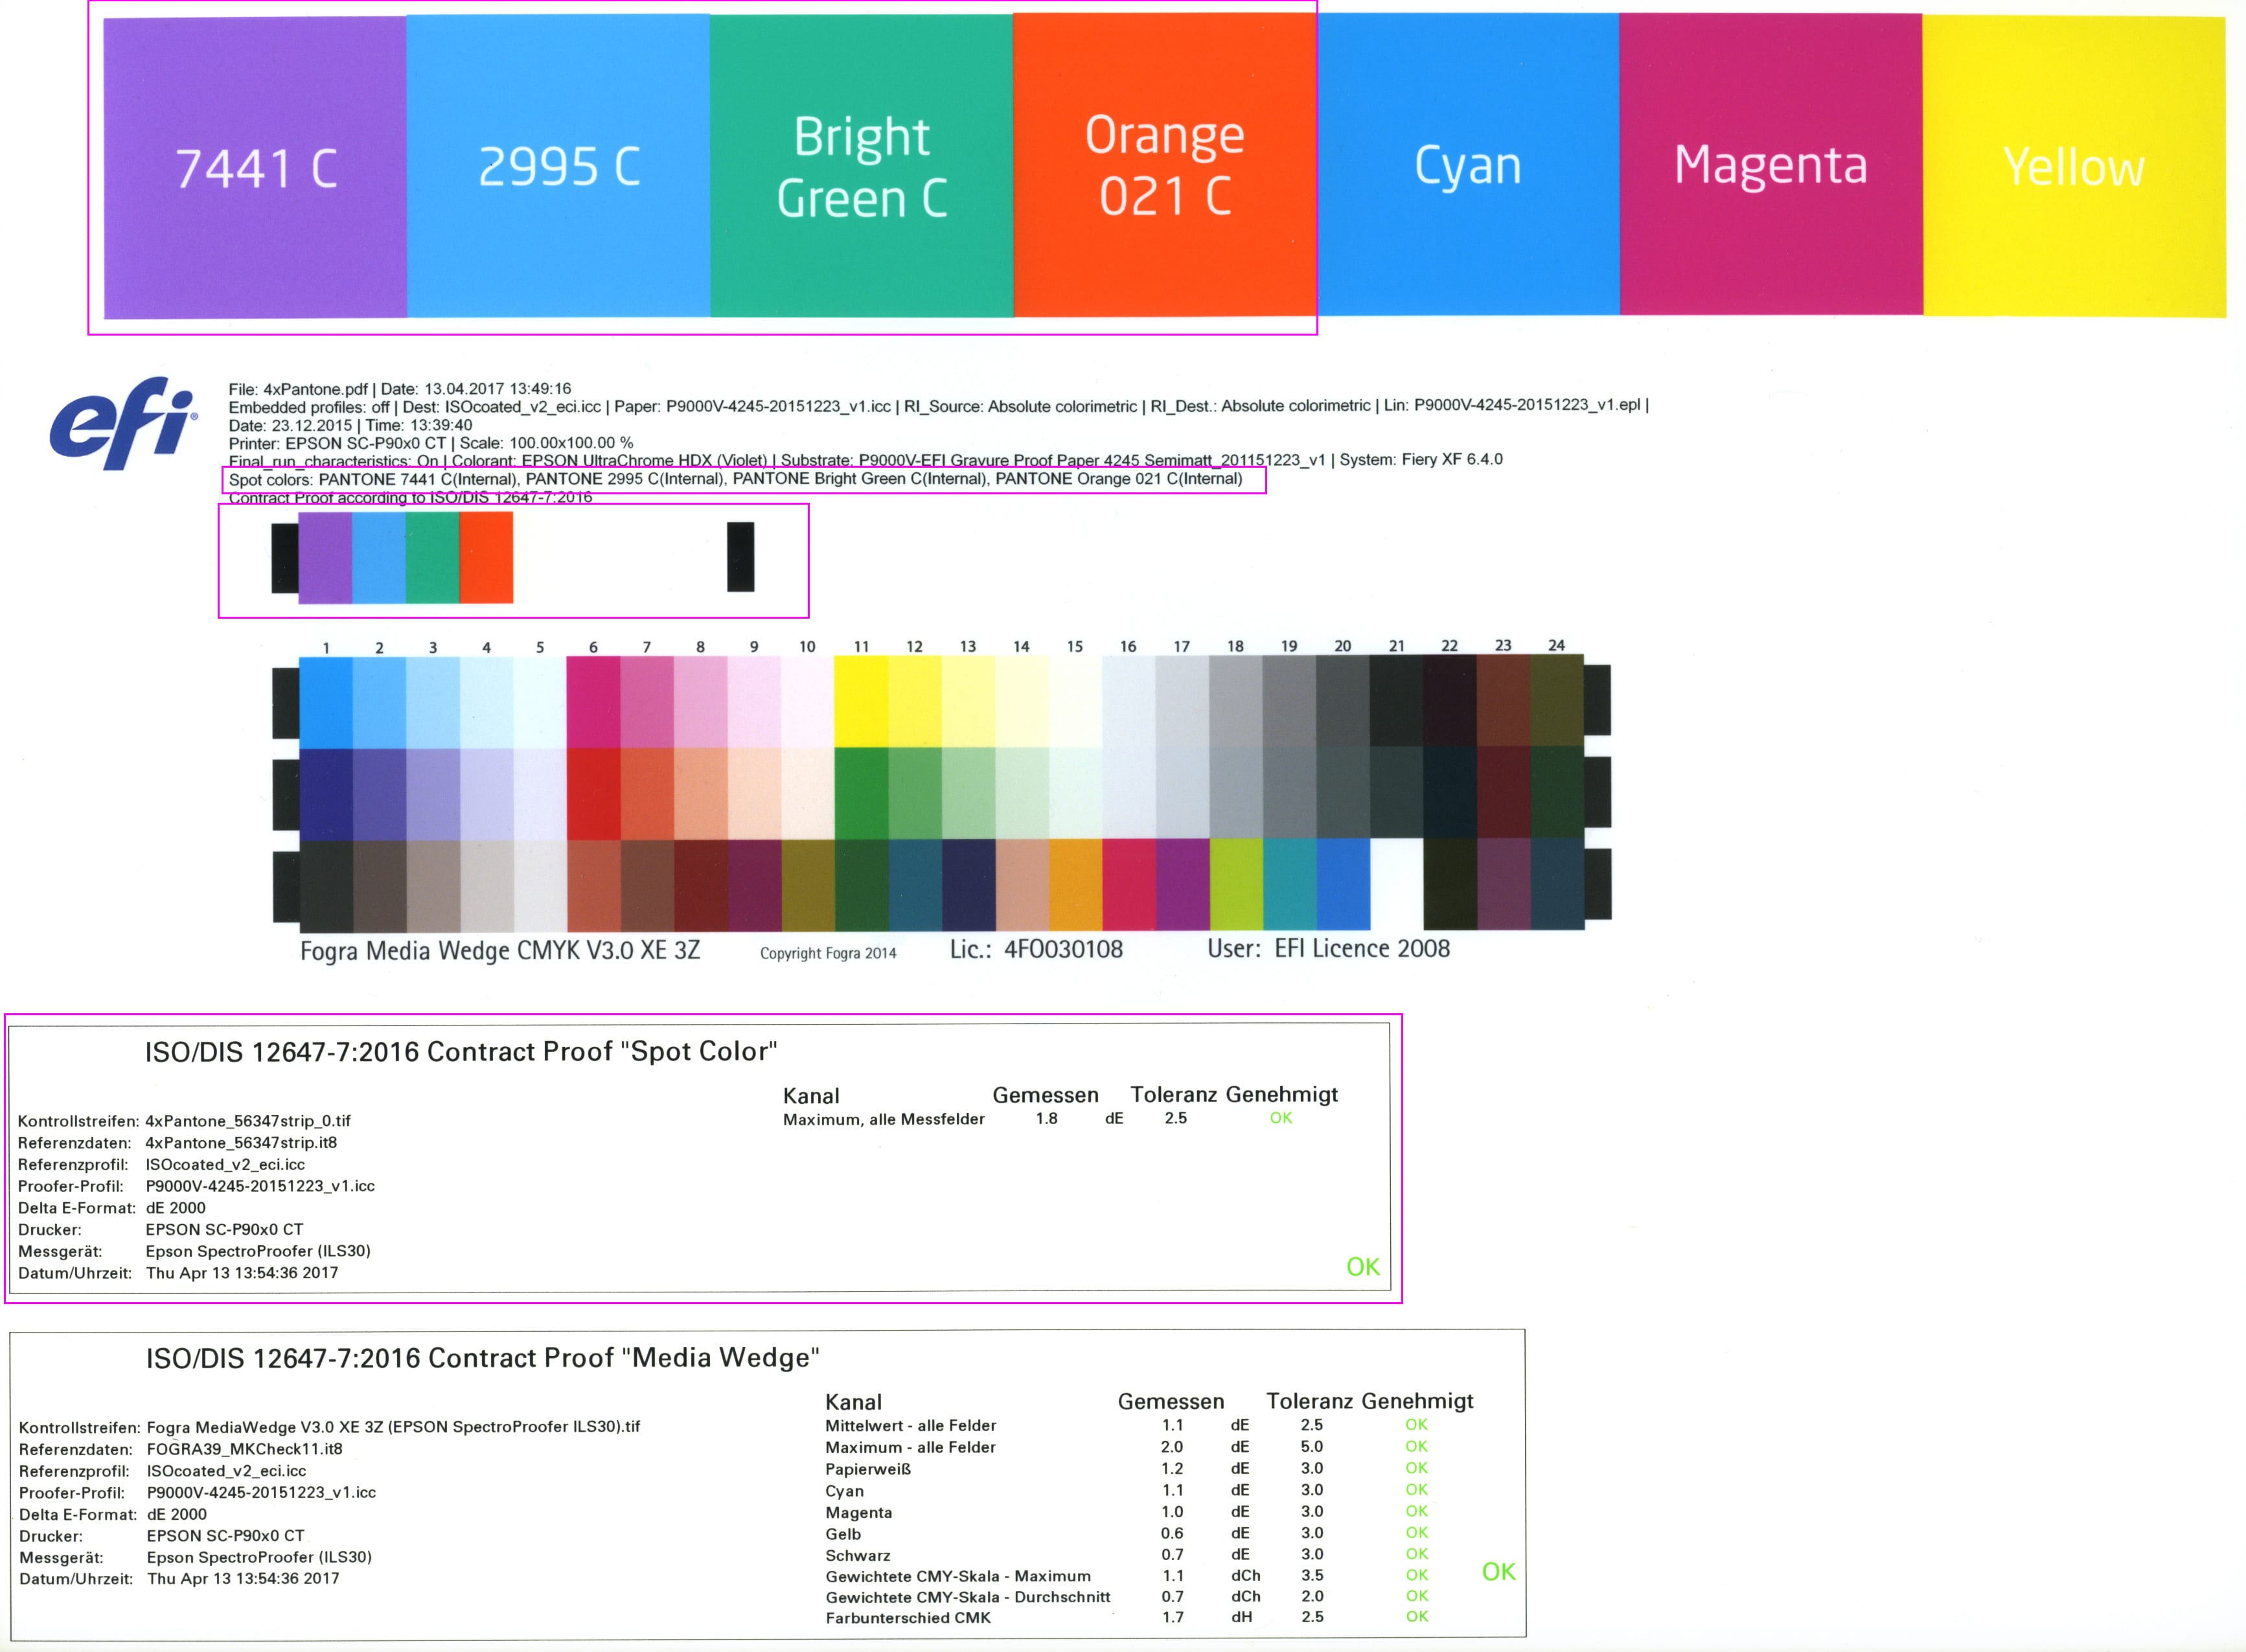 proof.de : Spotcolor mediawedge / Cale média couleurs d'accompagnement avec évaluation selon ISO/DIS 12647-7:2016